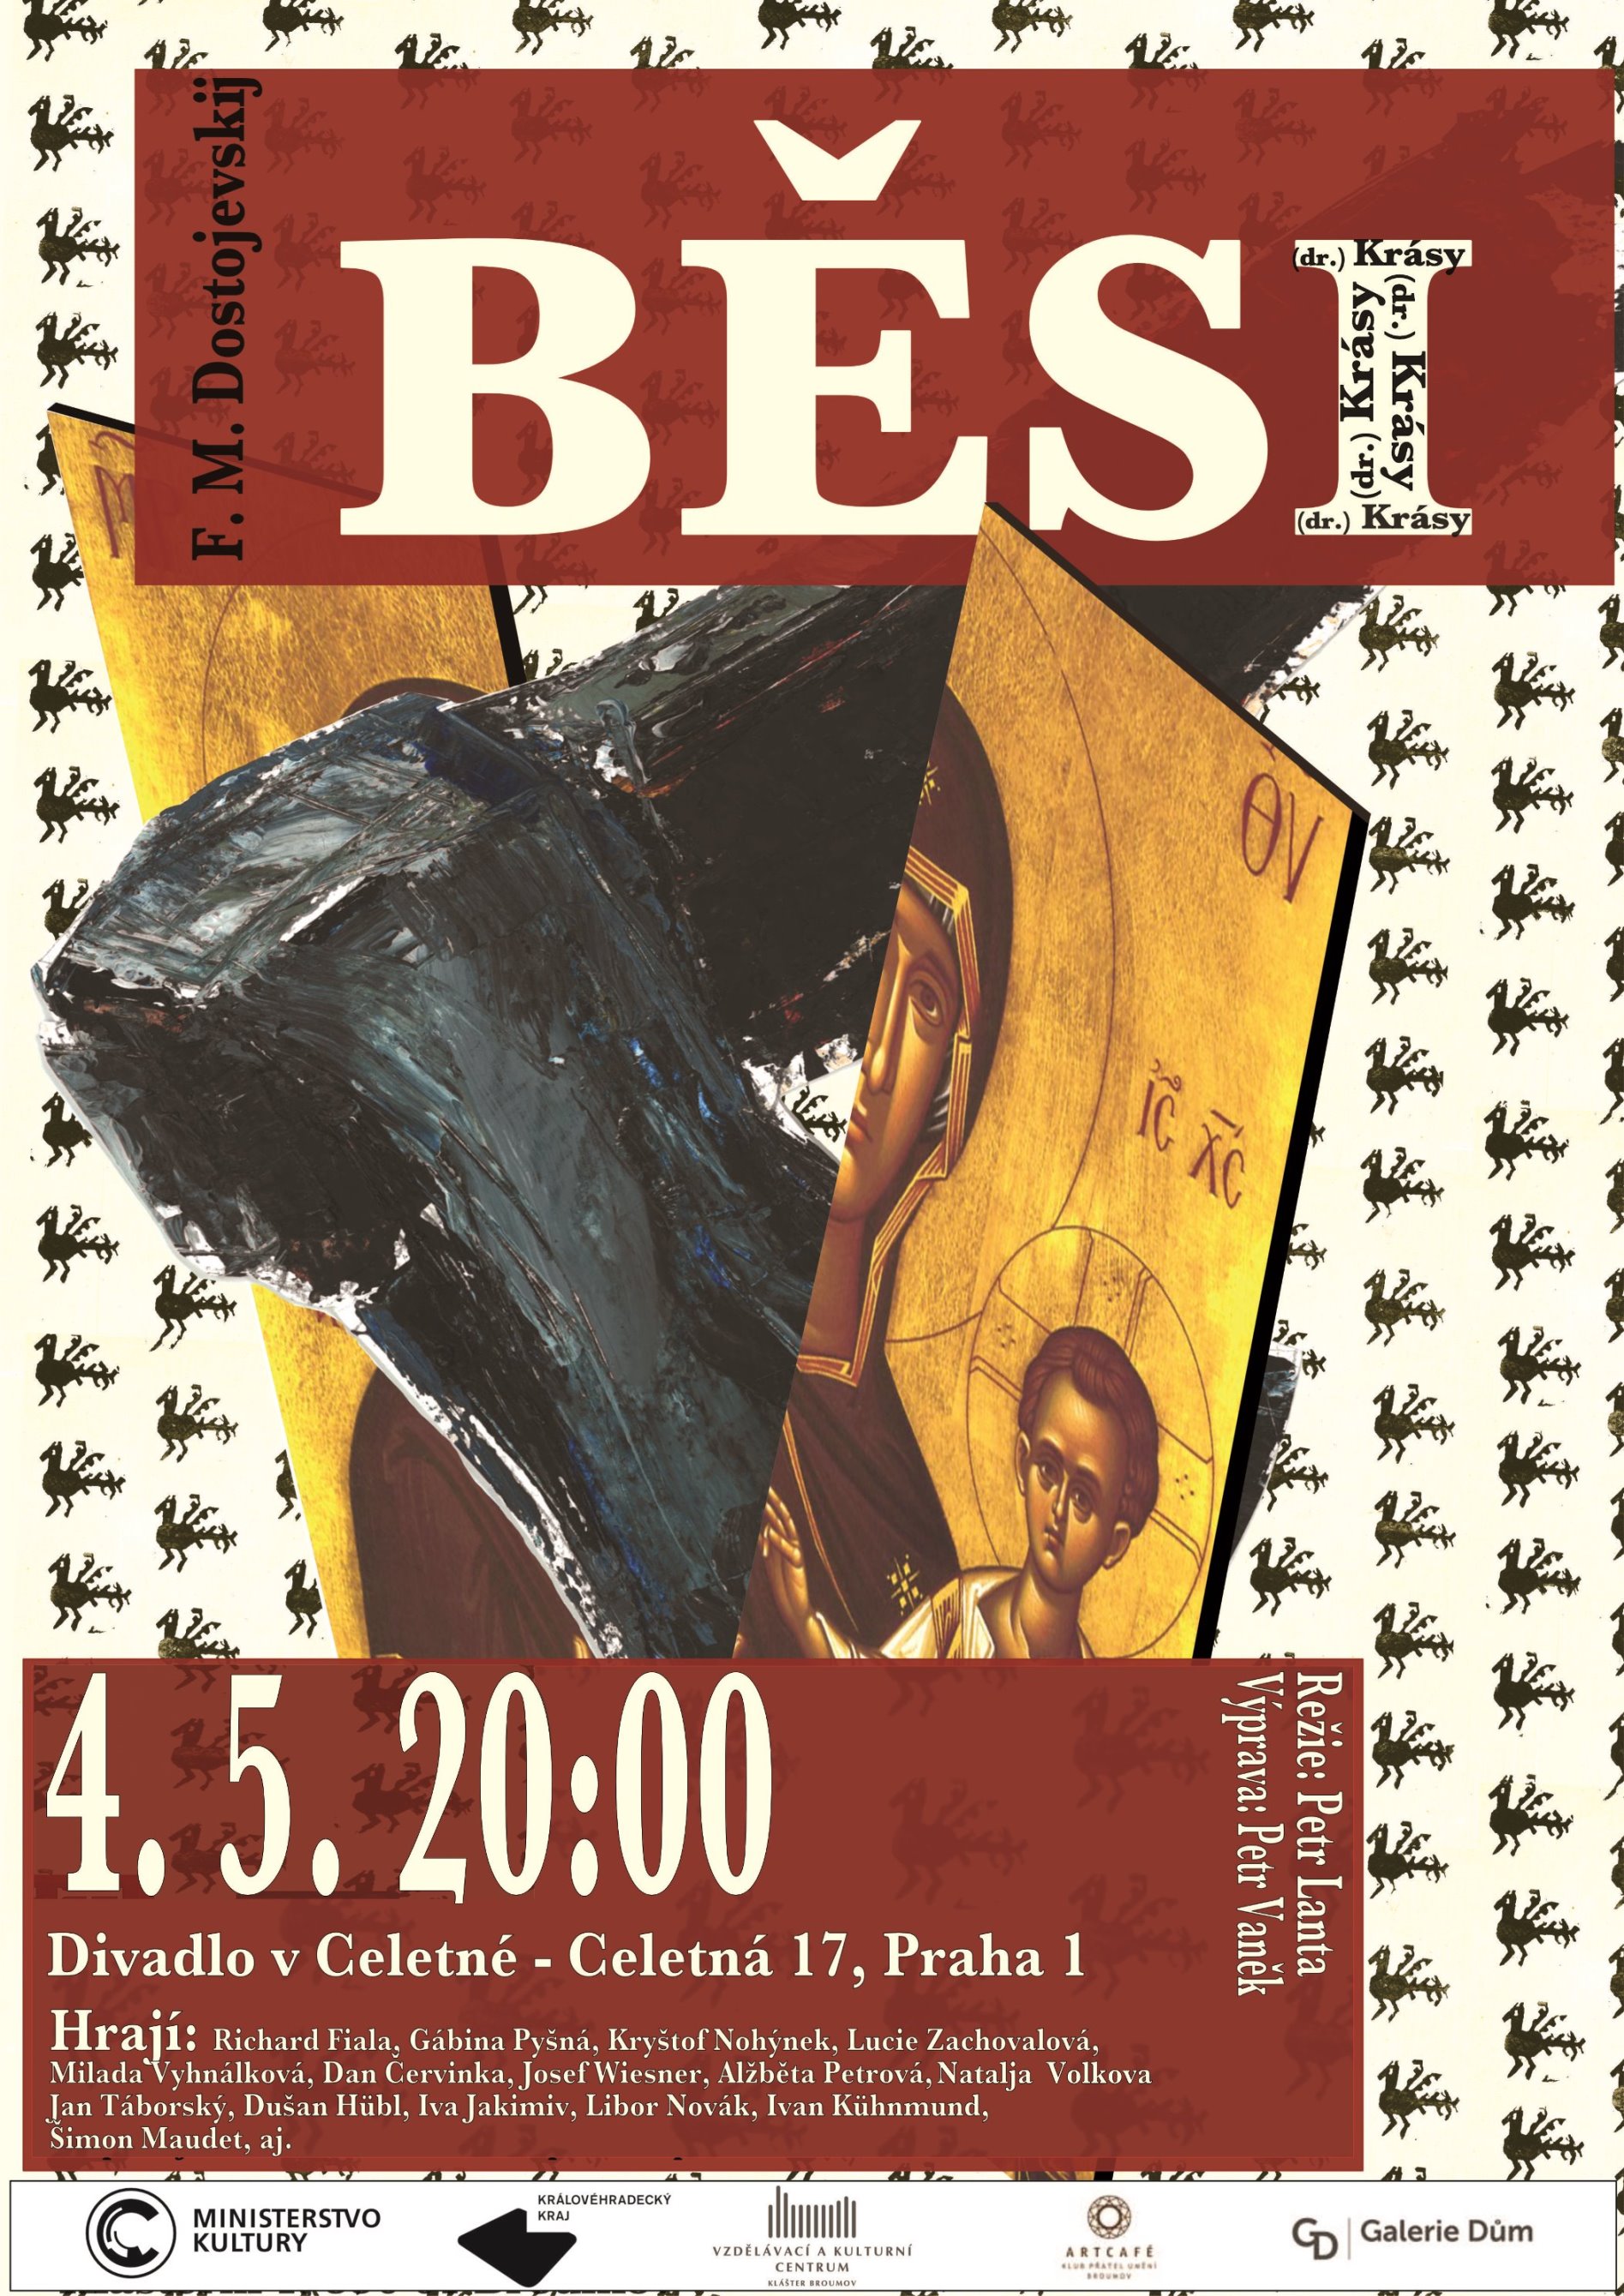 Plakát na premiéru Běsů 25. 1. 2022 ve Vile Štvanice